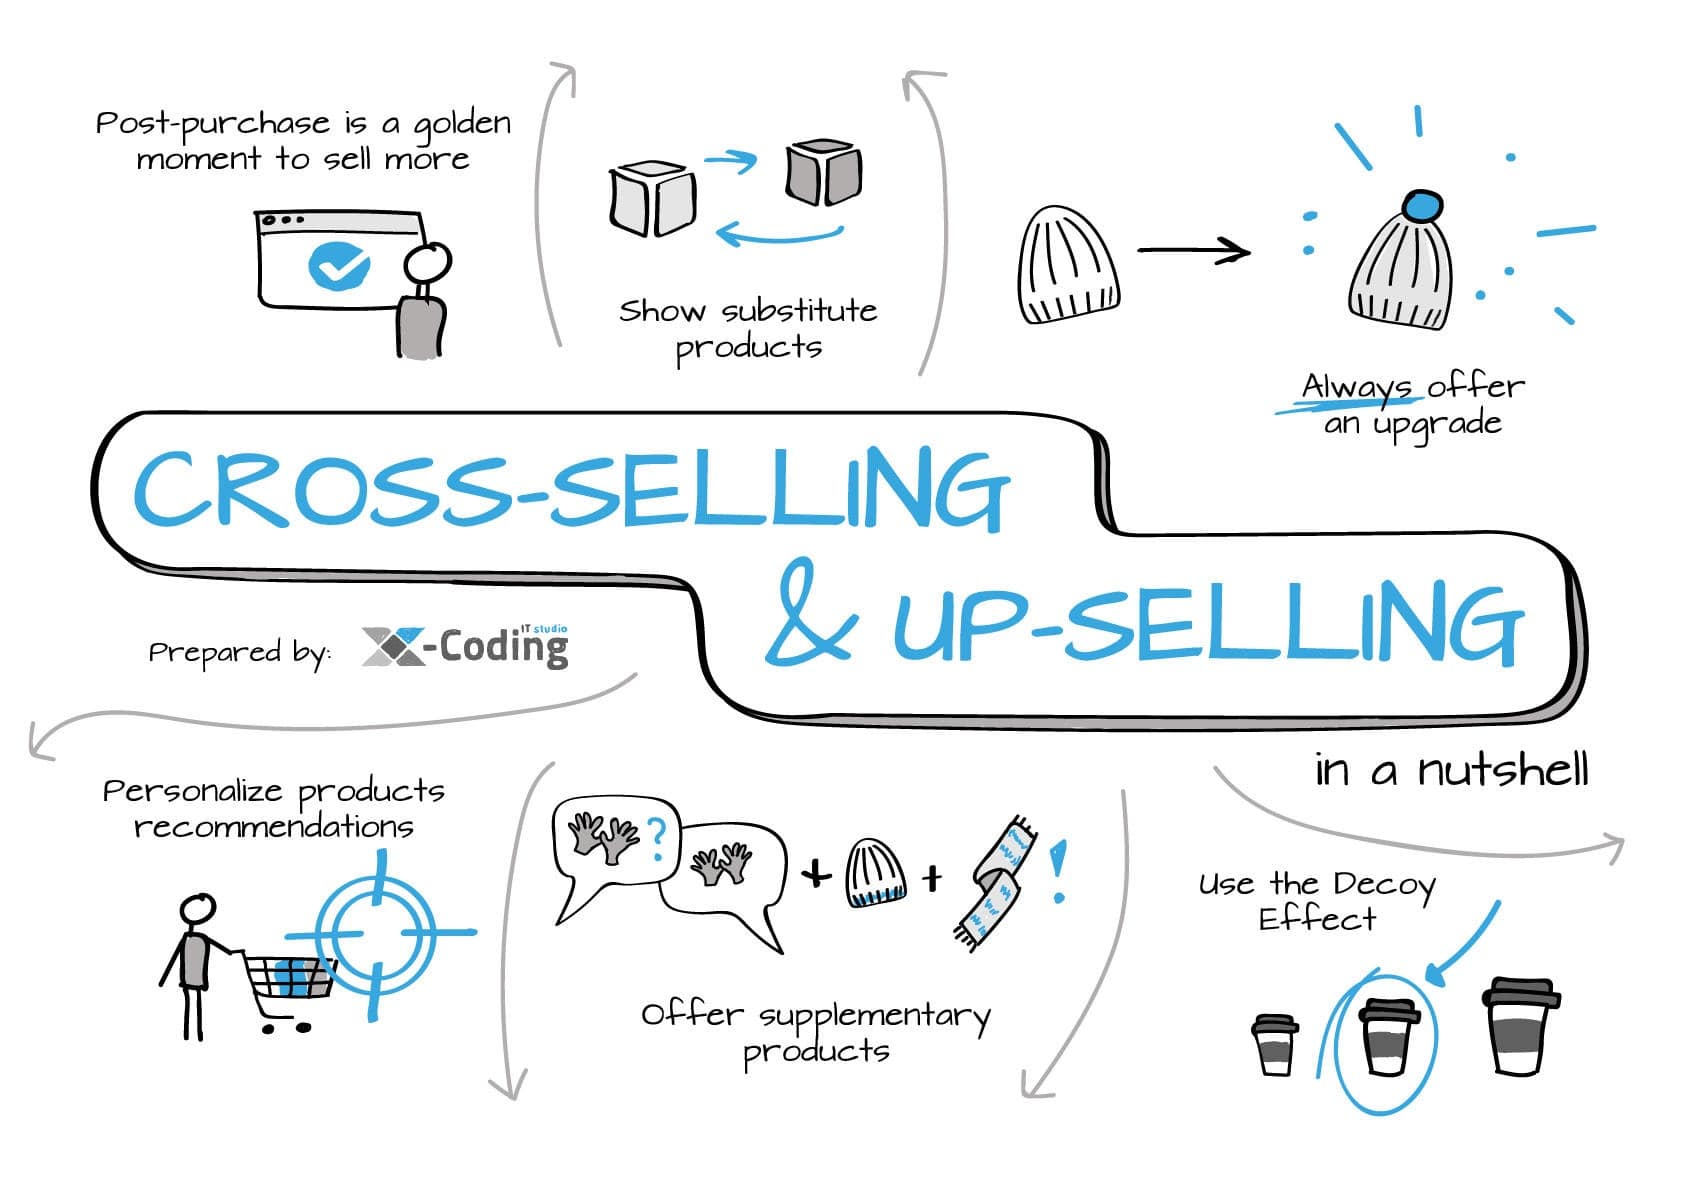 quy trình up selling và cross selling hiệu quả